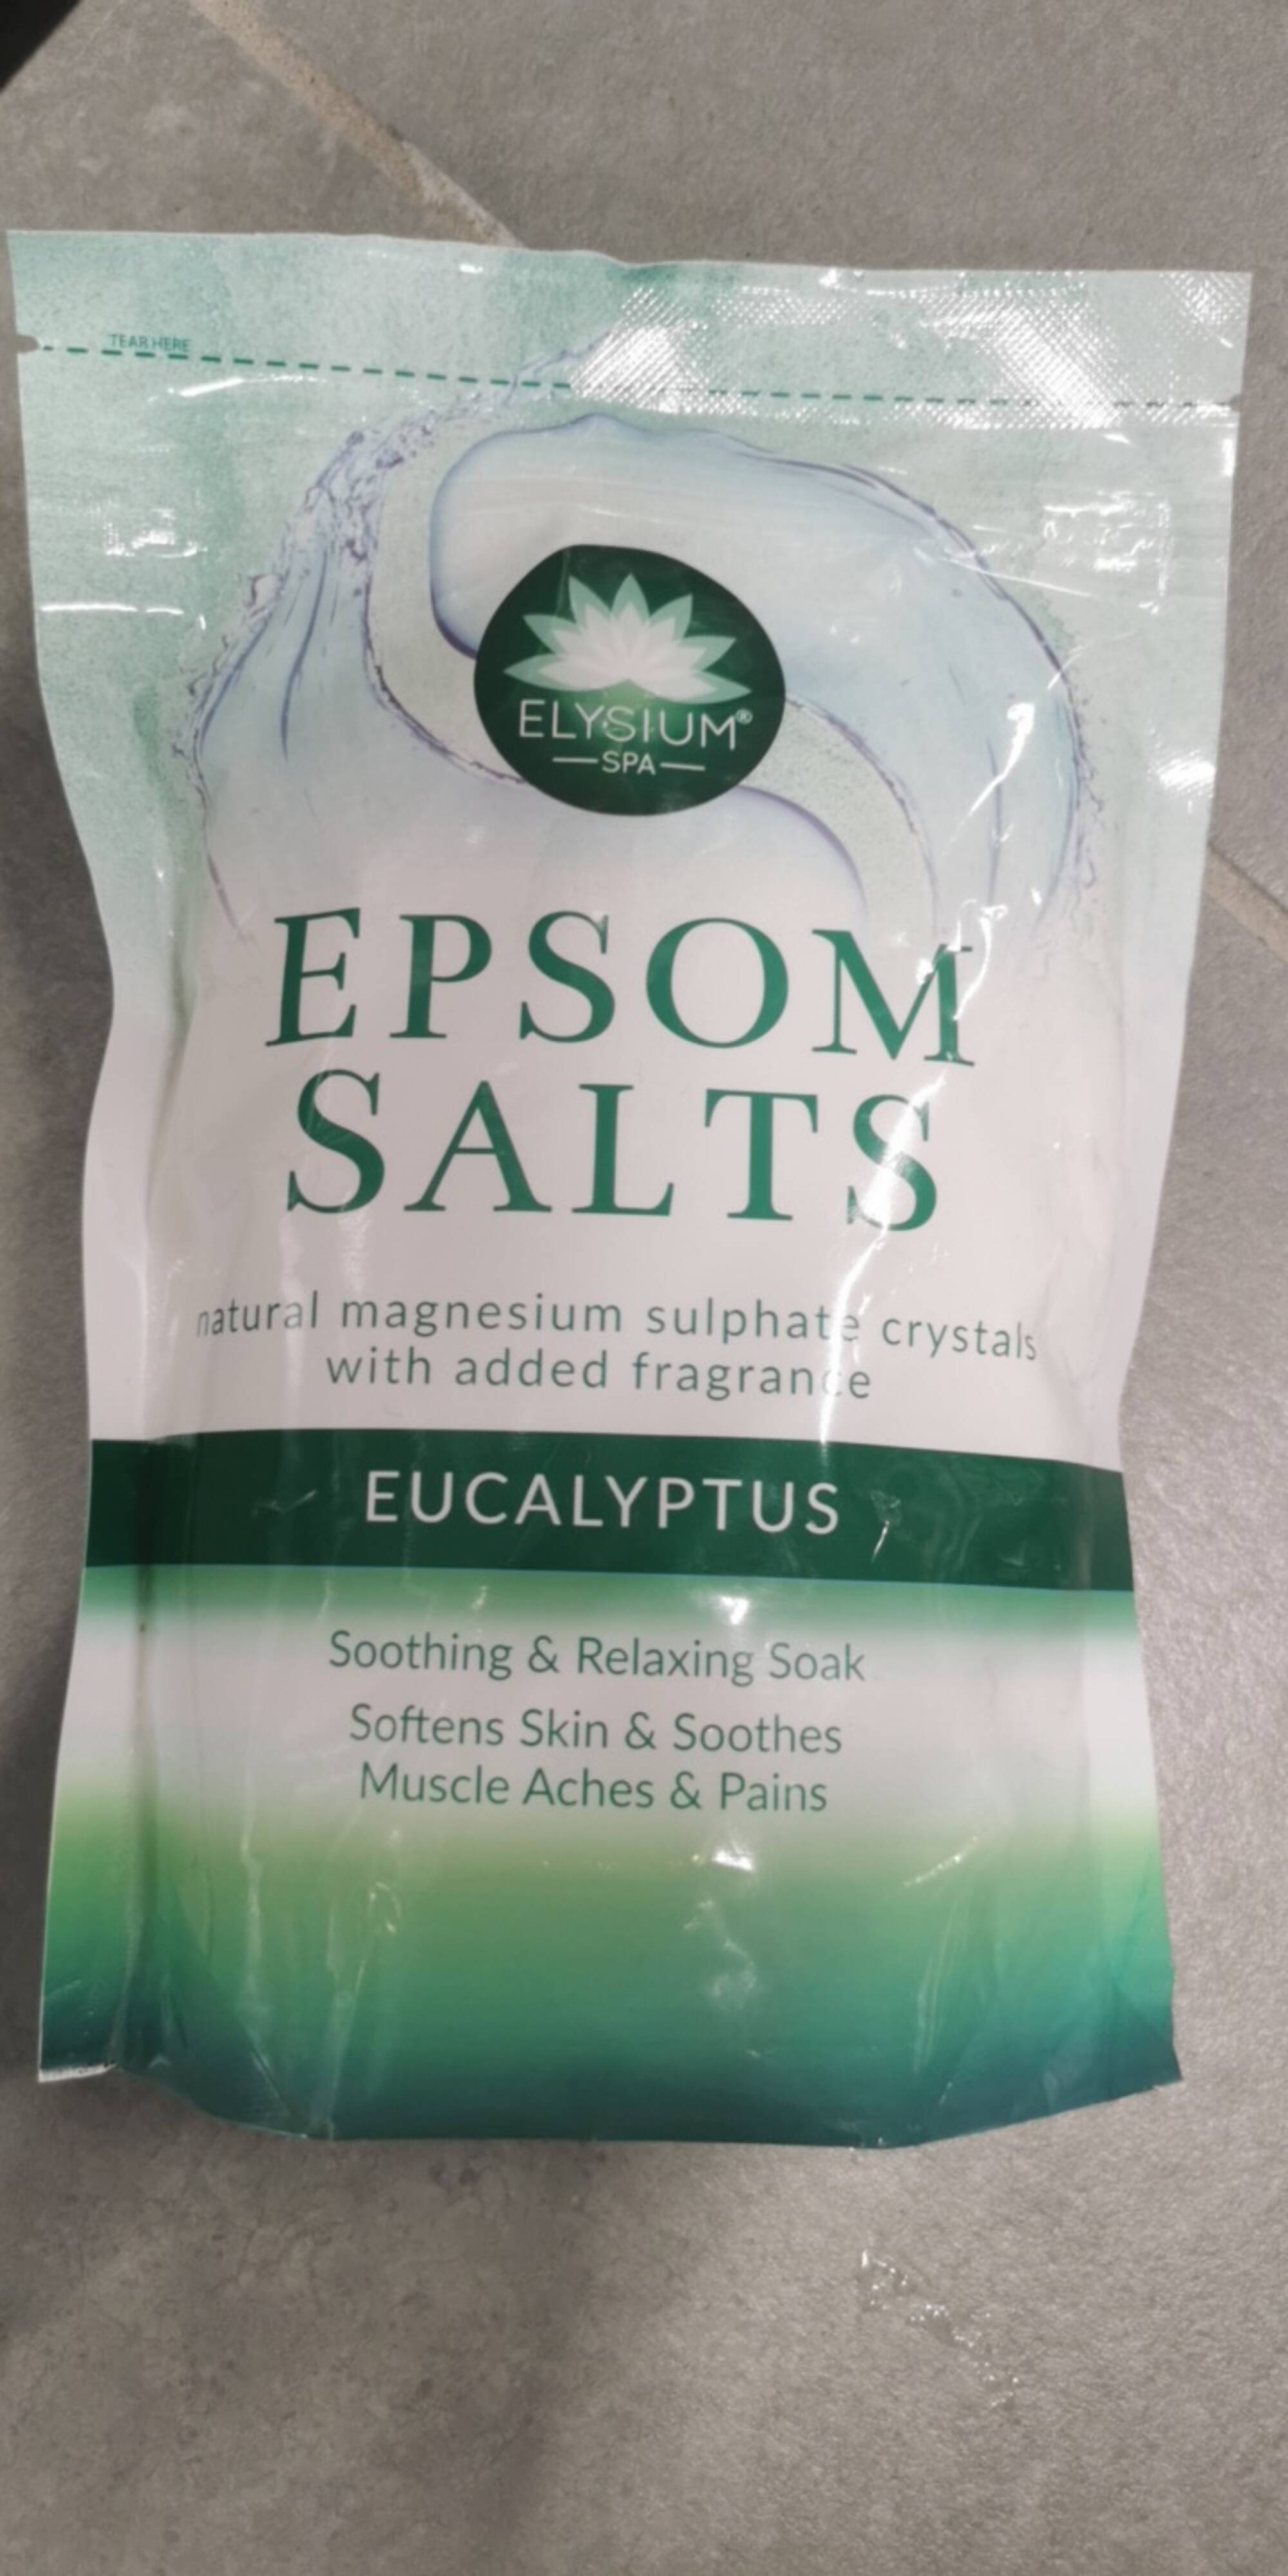 ELYSIUM SPA - Epsom salts eucalyptus 